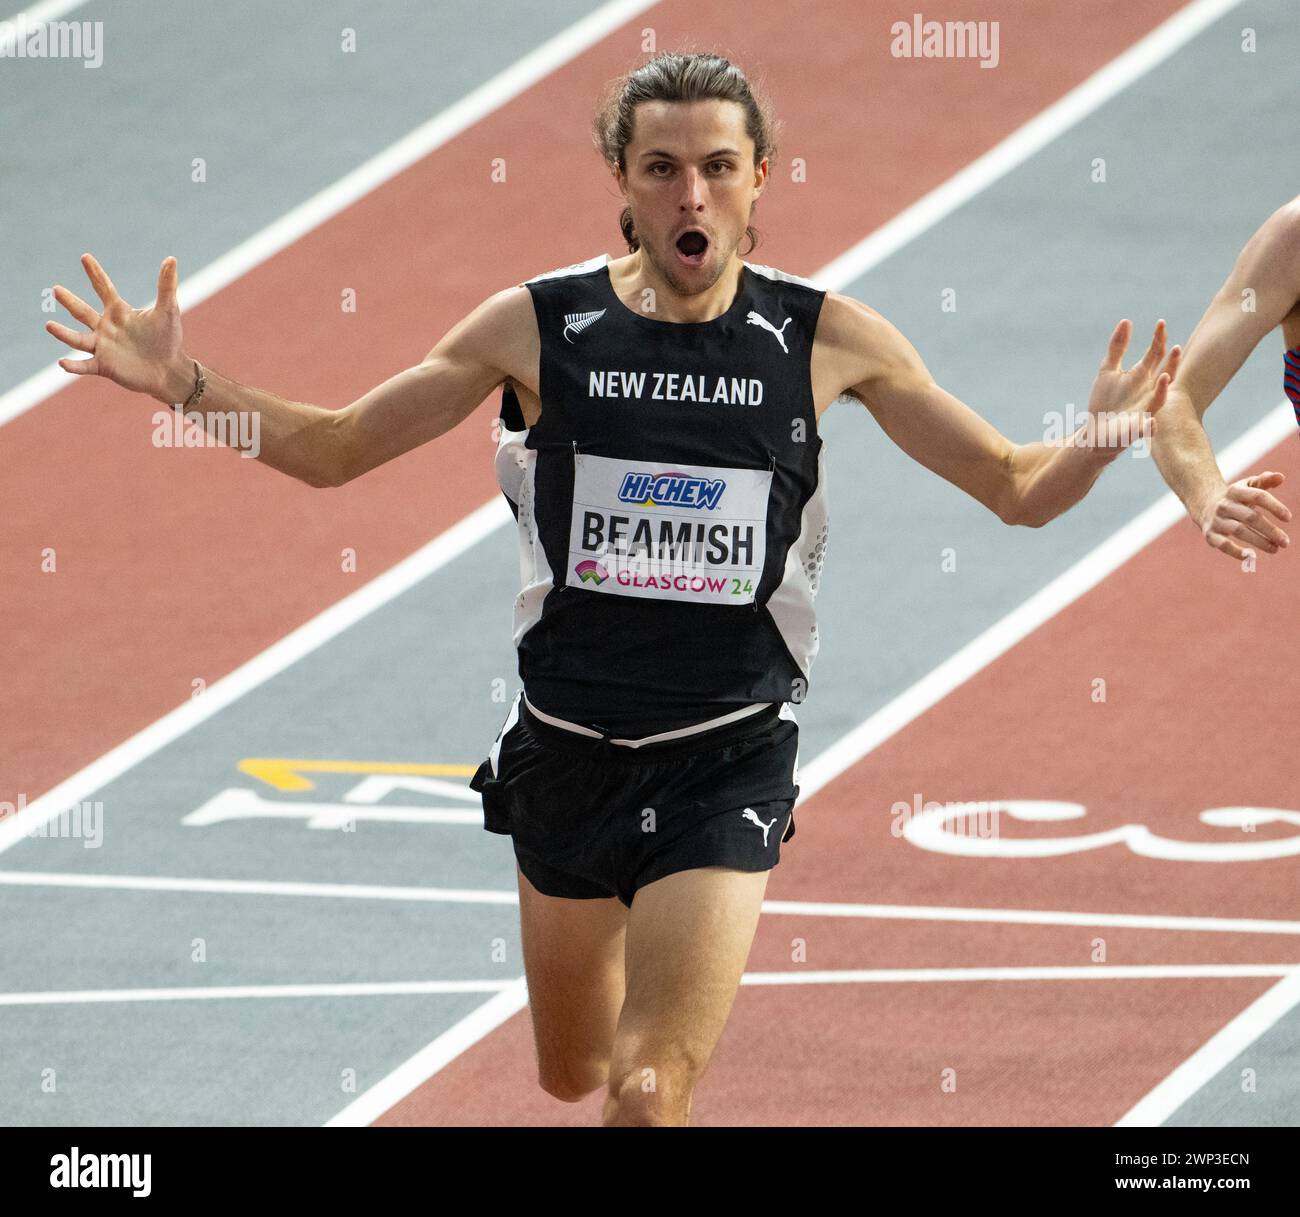 Geordie Beamish, neozelandese, celebra la sua vittoria nella finale maschile dei 1500 m ai Campionati del mondo di atletica leggera indoor, Emirates Arena, Glasgow, Scozia Foto Stock